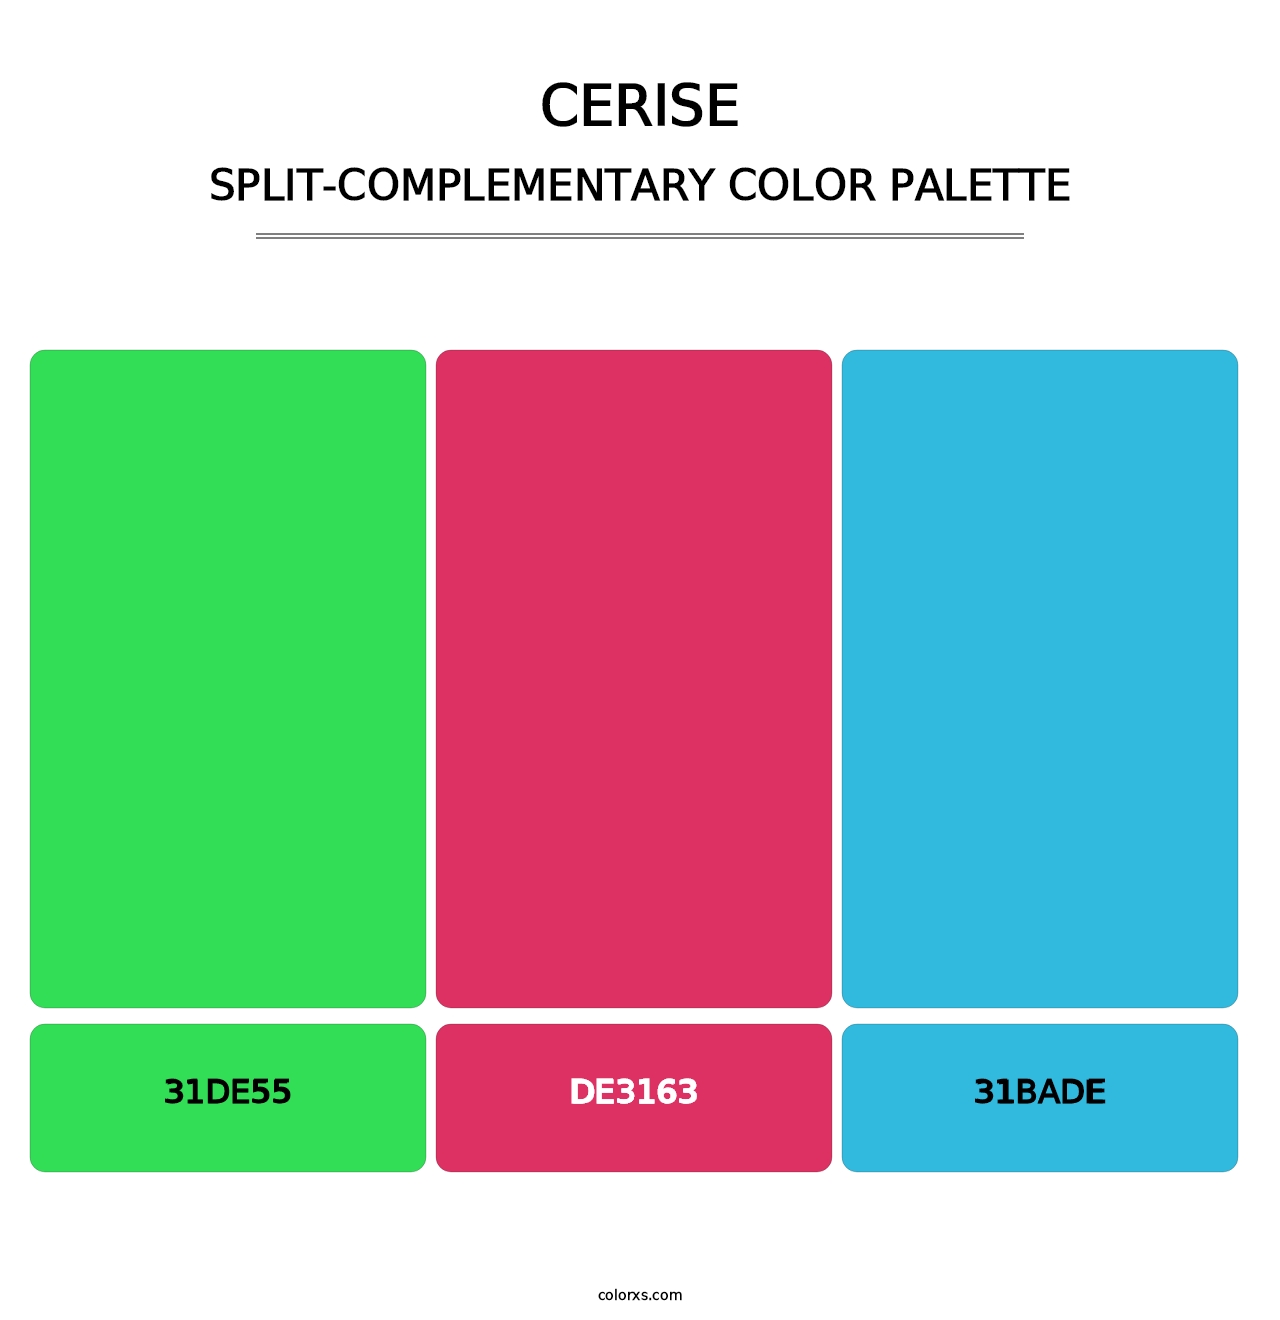 Cerise - Split-Complementary Color Palette